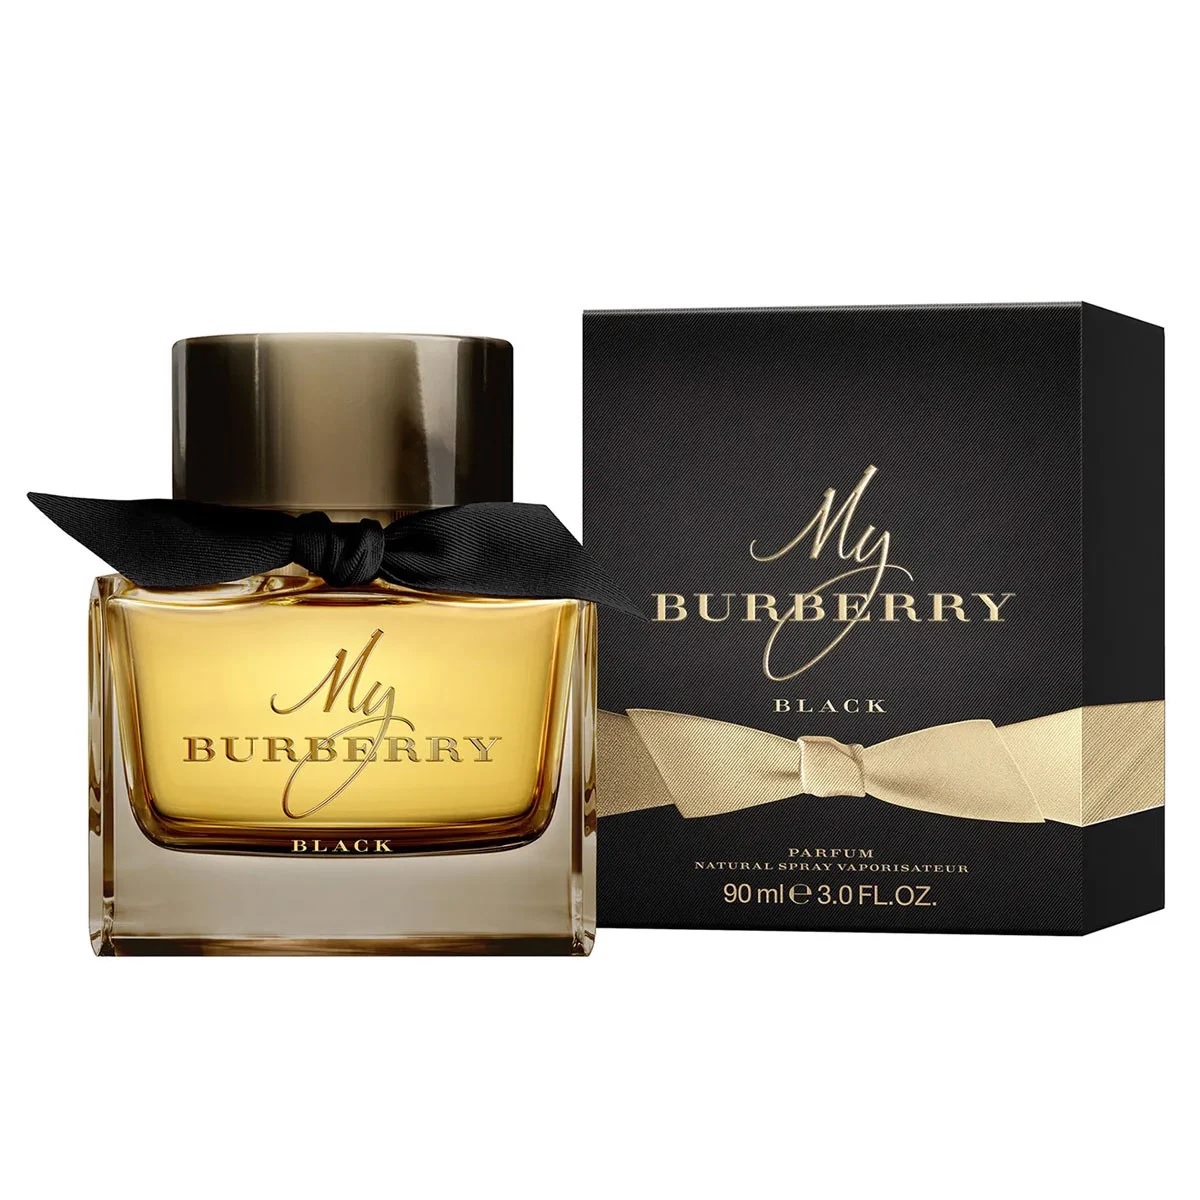 Burberry-My-burberry-Black-Parfum-chinh-hang